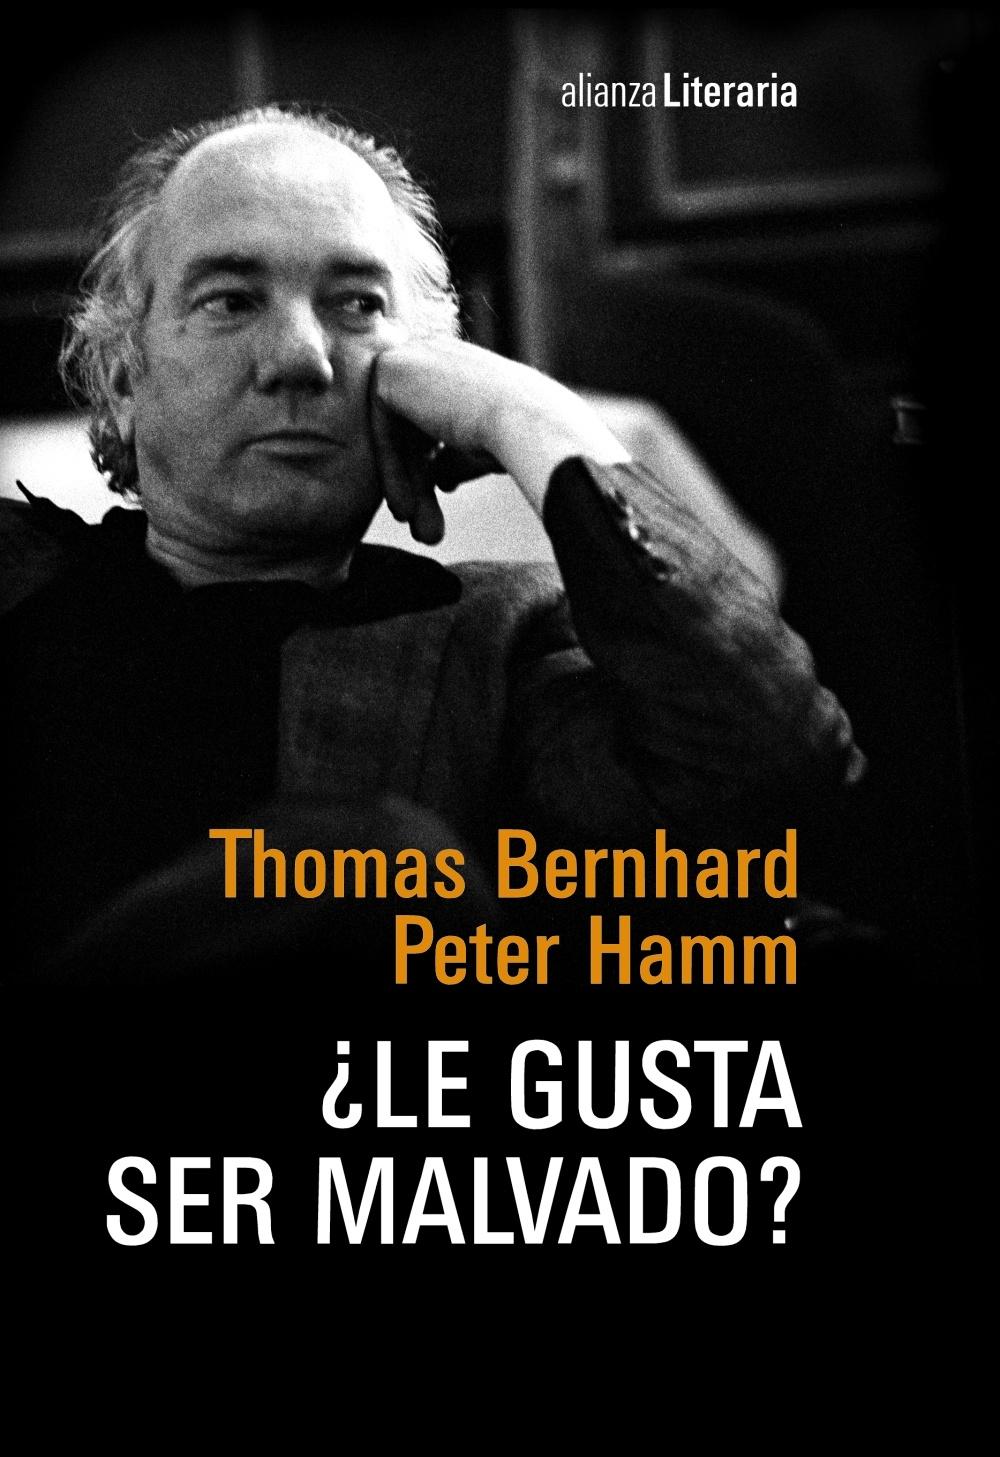 ¿Le Gusta Ser Malvado? "Conversación Nocturna Entre Thomas Bernhard y Peter Hamm en la C"